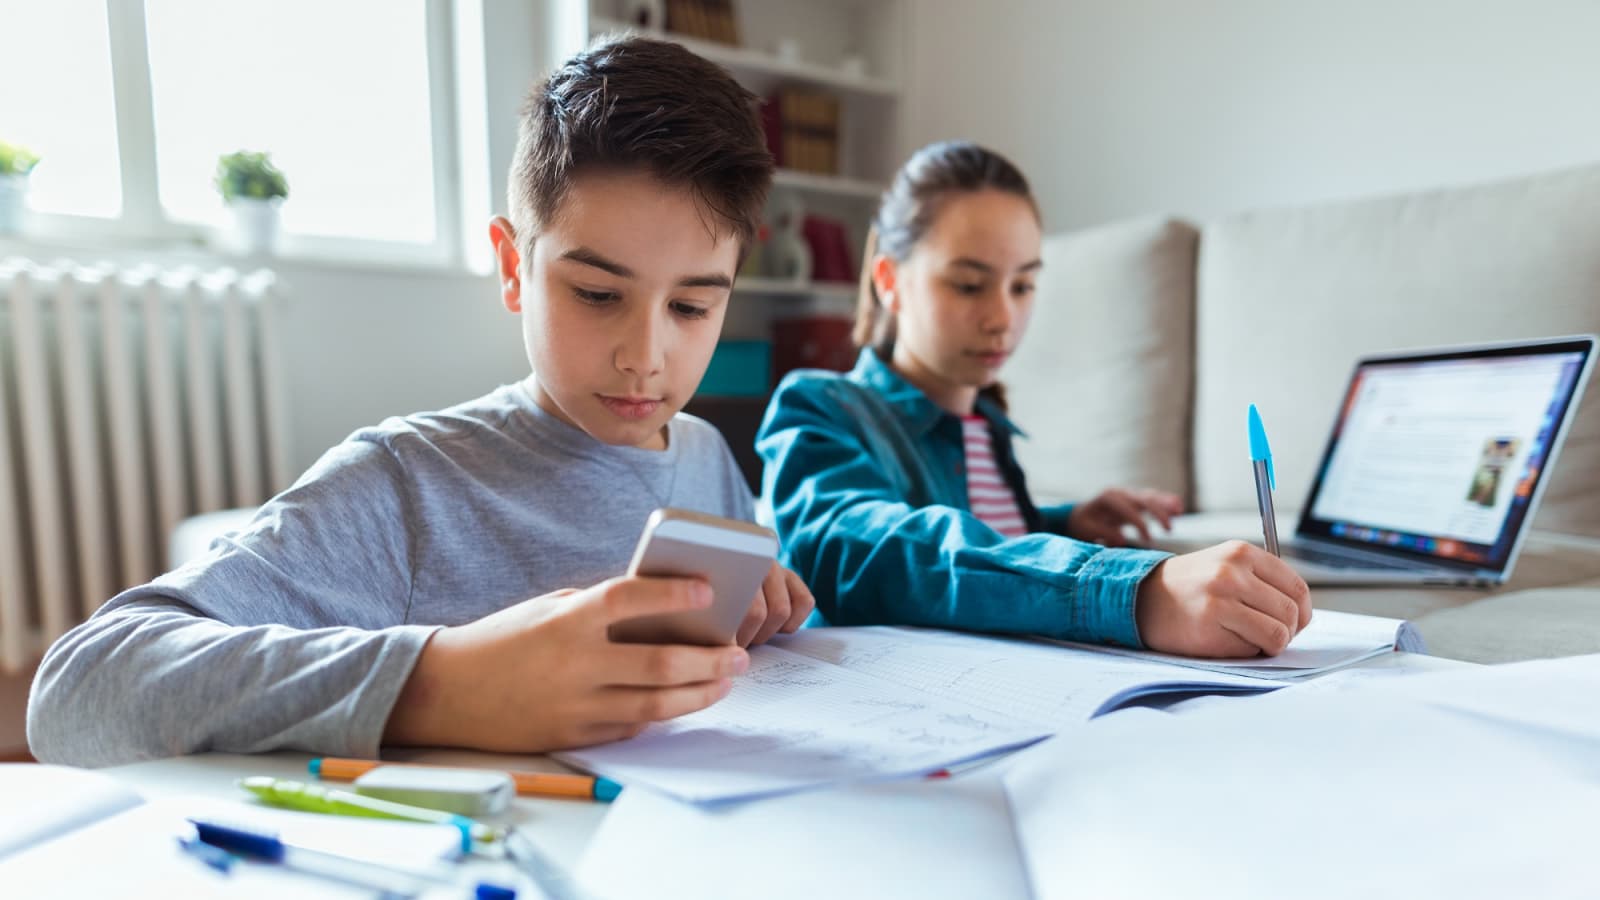 ban-smartphones-improve-school-grades